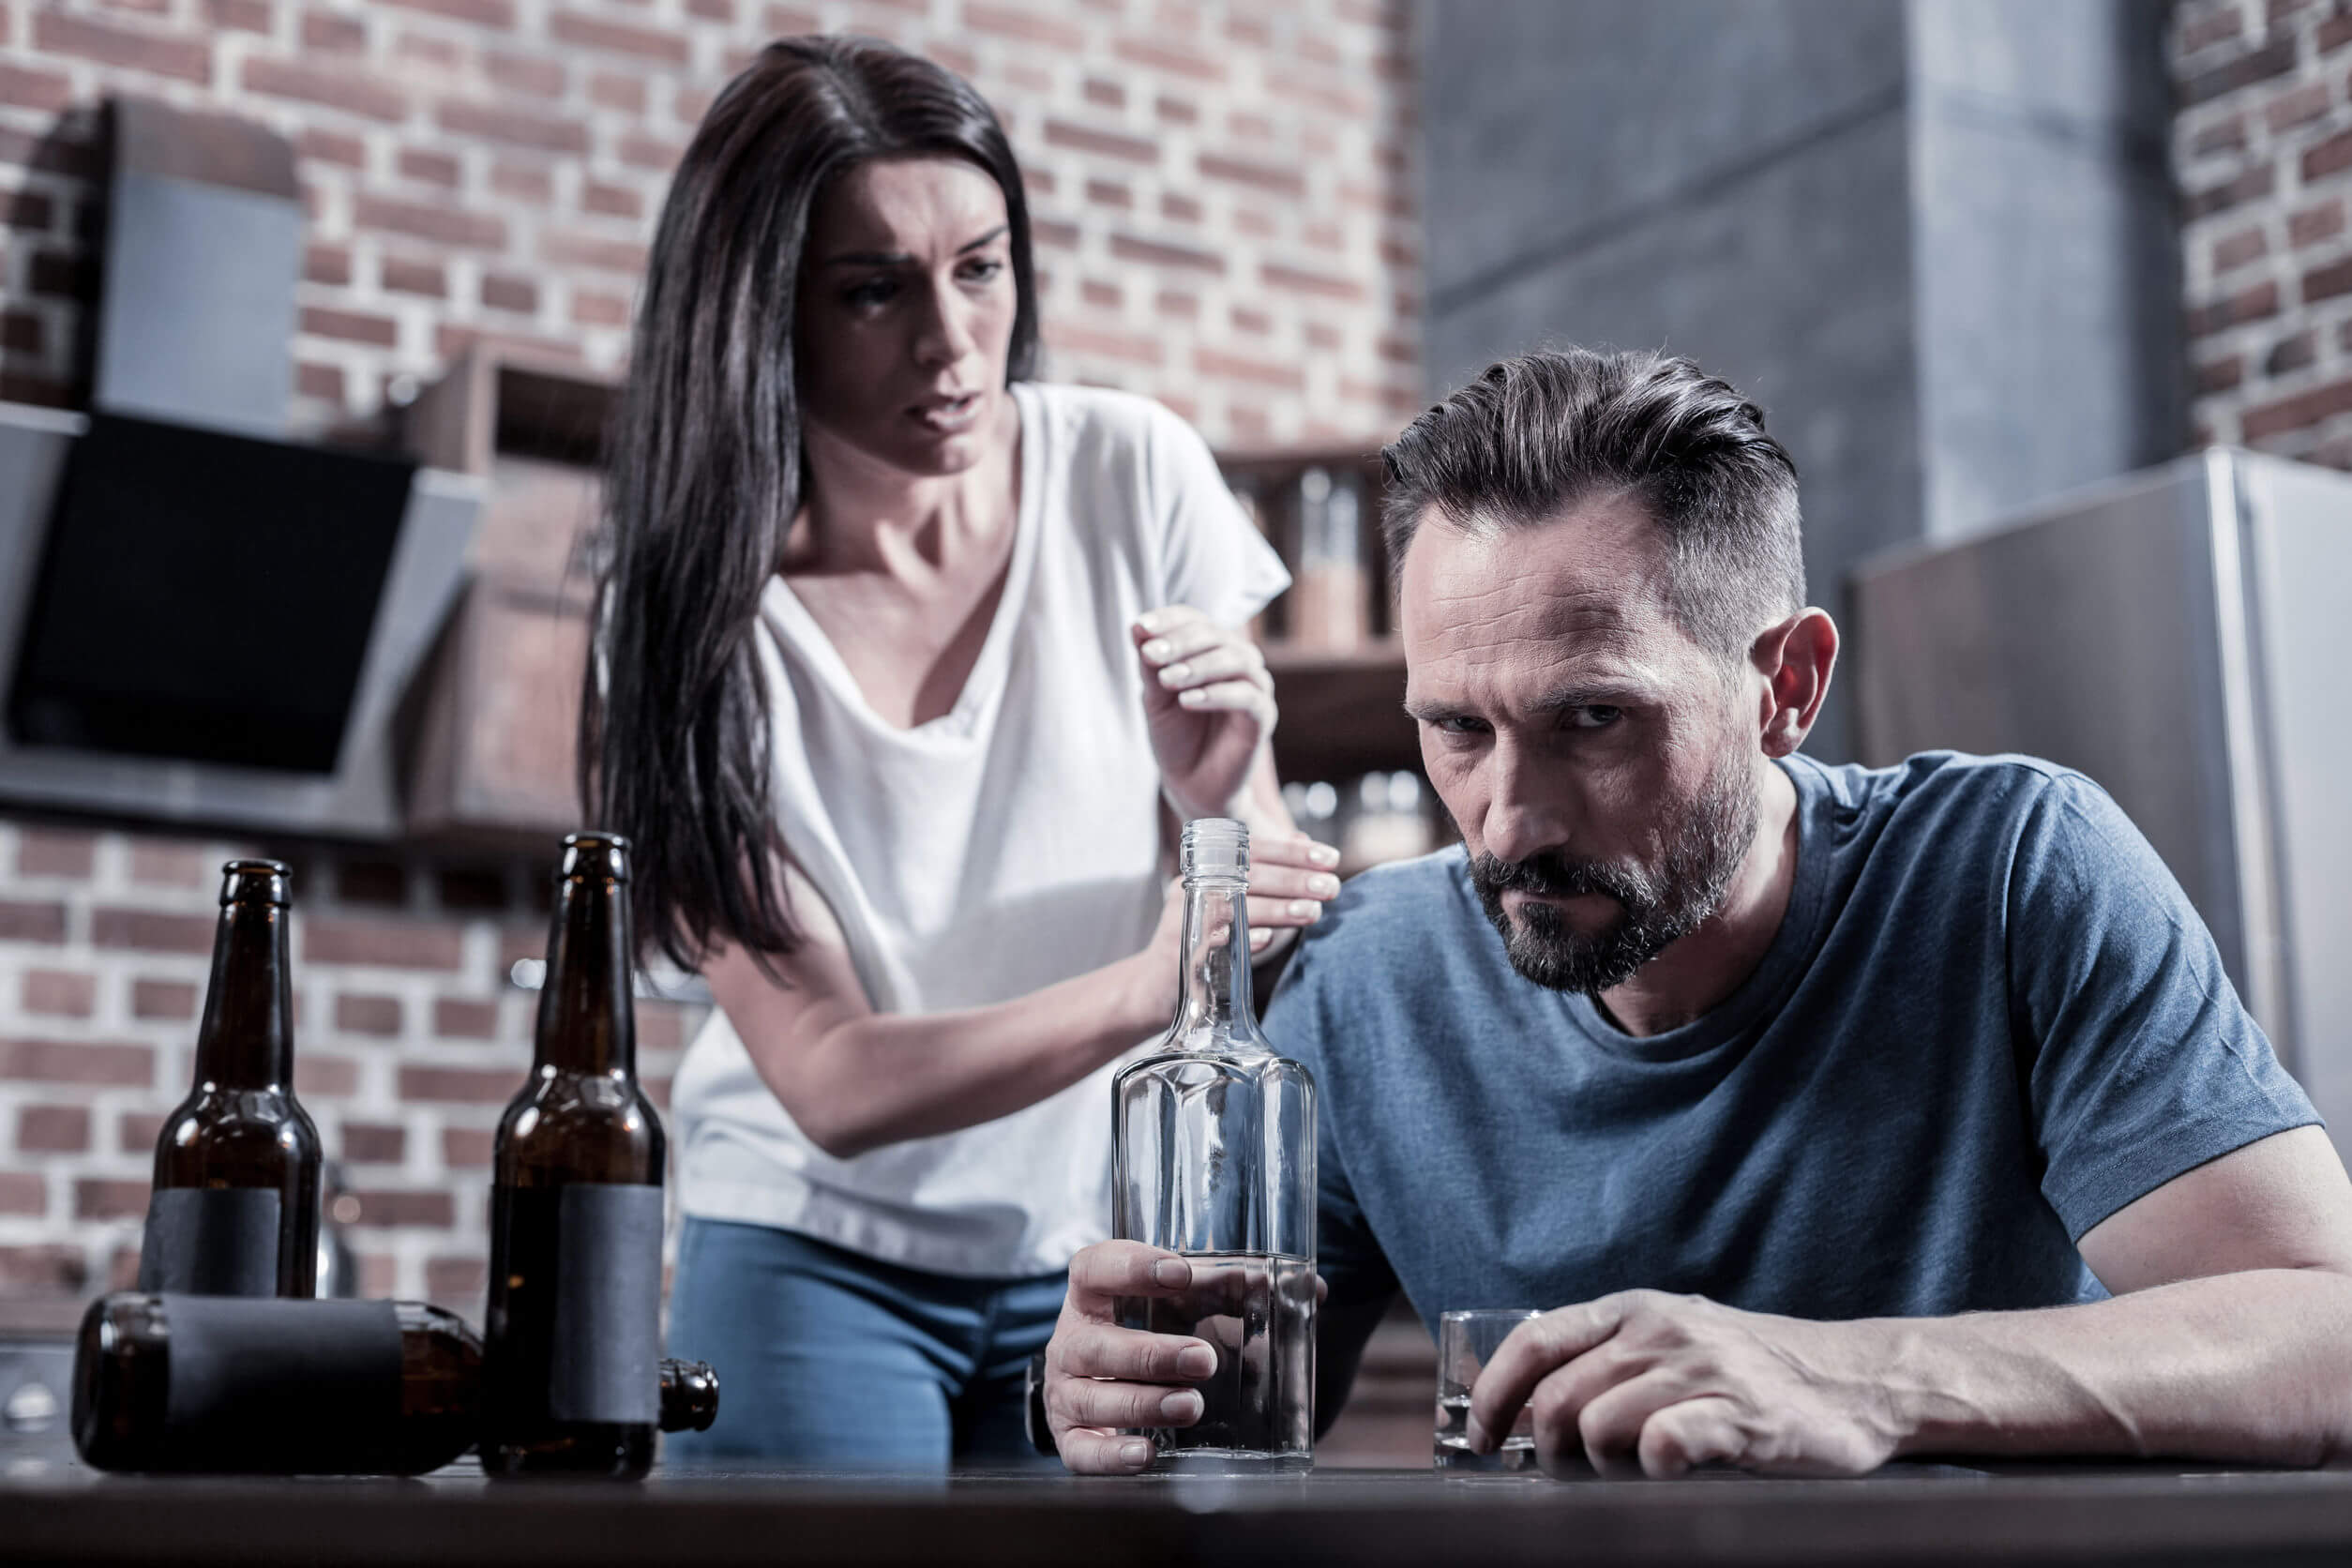 Gli effetti dell'alcol sul cervello possono portare a problemi di convivenza.